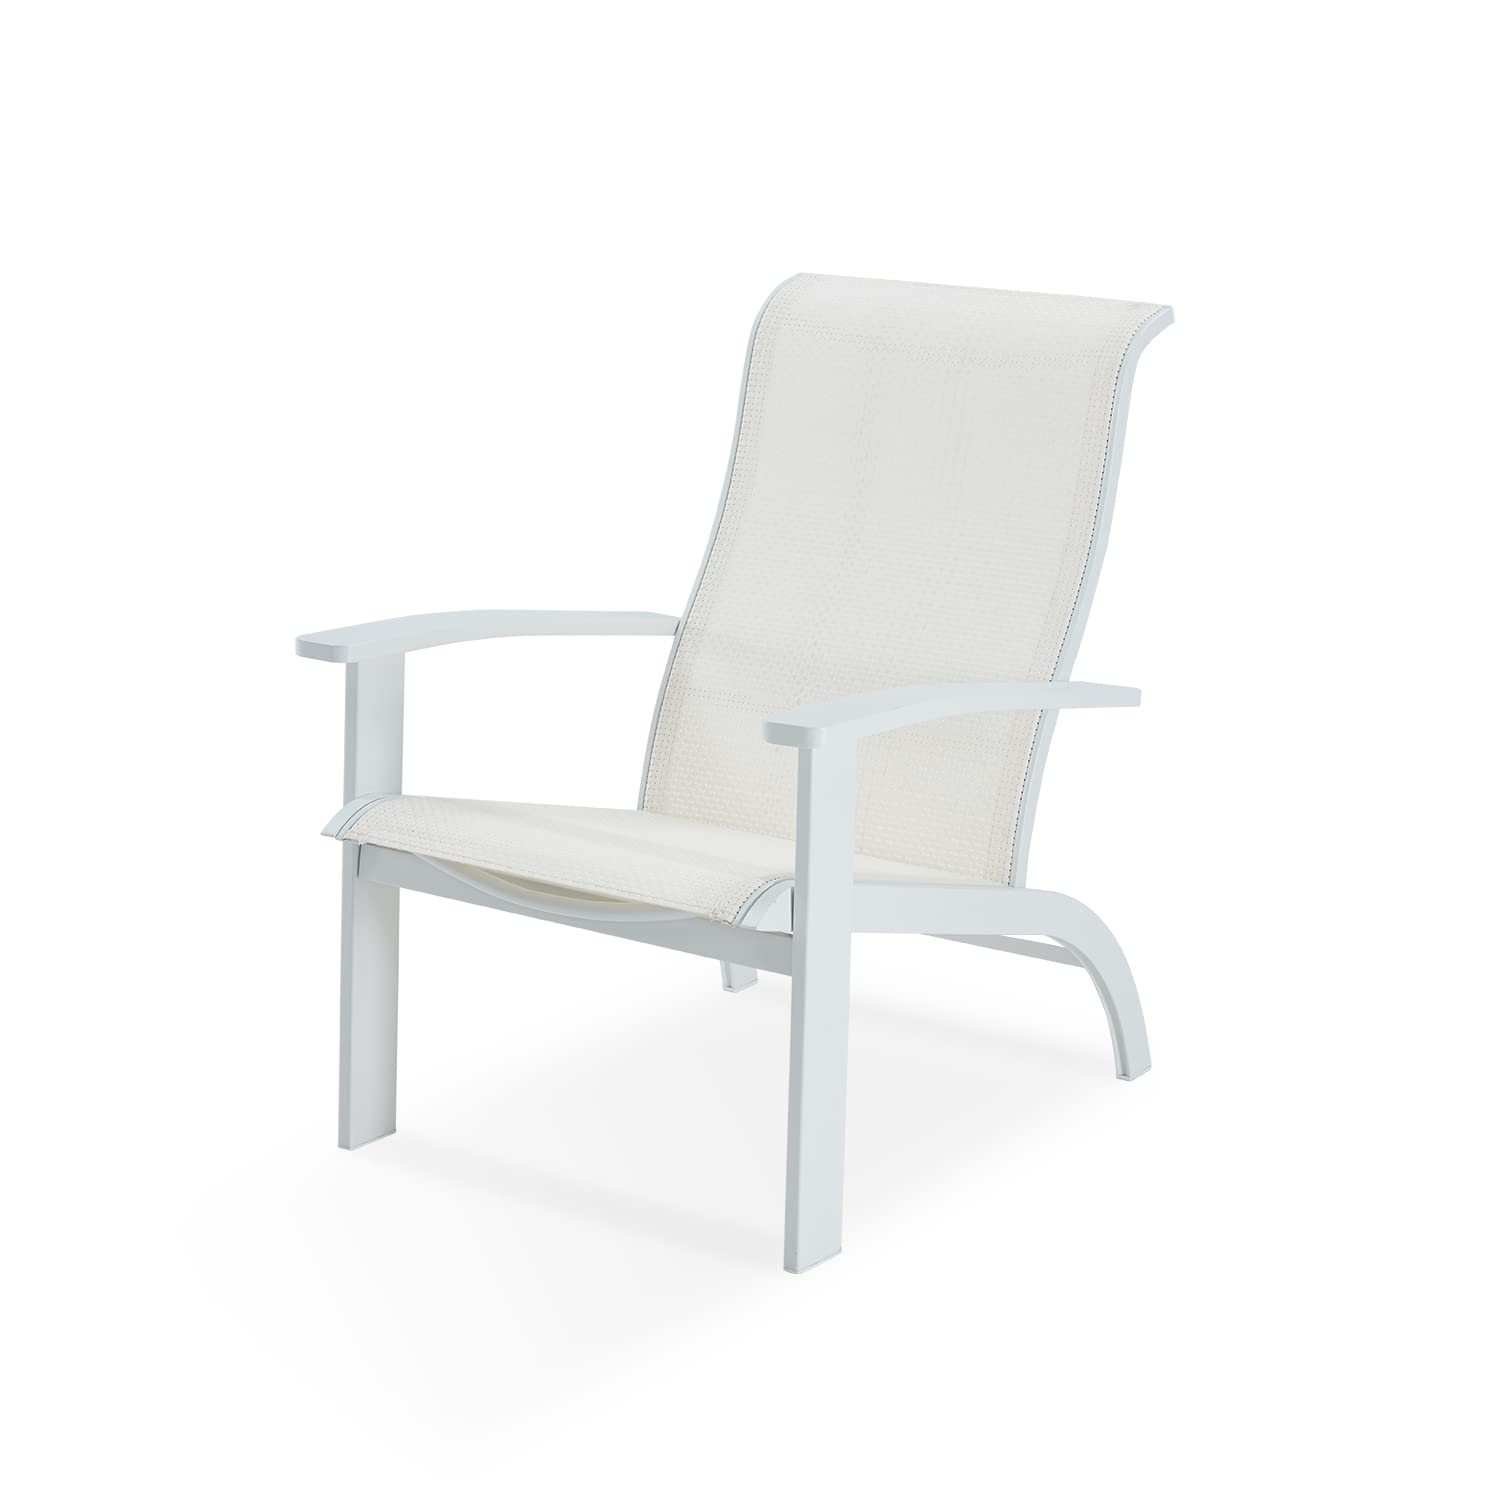 Silla Vicllax Adirondack, silla de jardín para muebles de exterior resistente a la intemperie